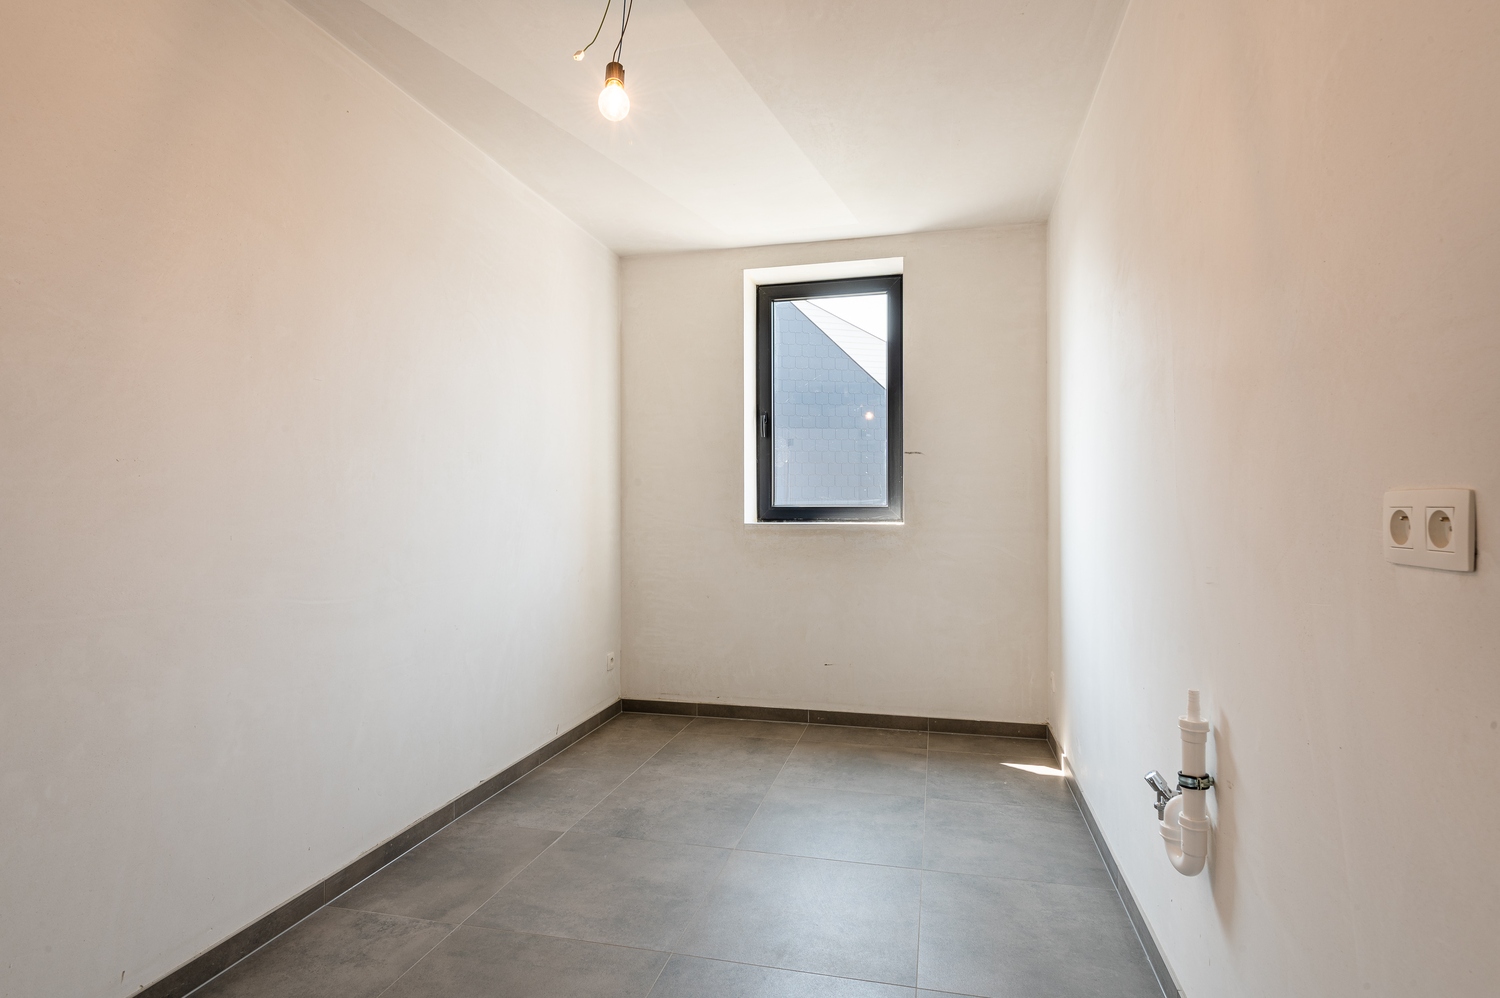 Nieuwbouw duplex appartement in Boekhoute - 6% BTW mogelijk foto 15